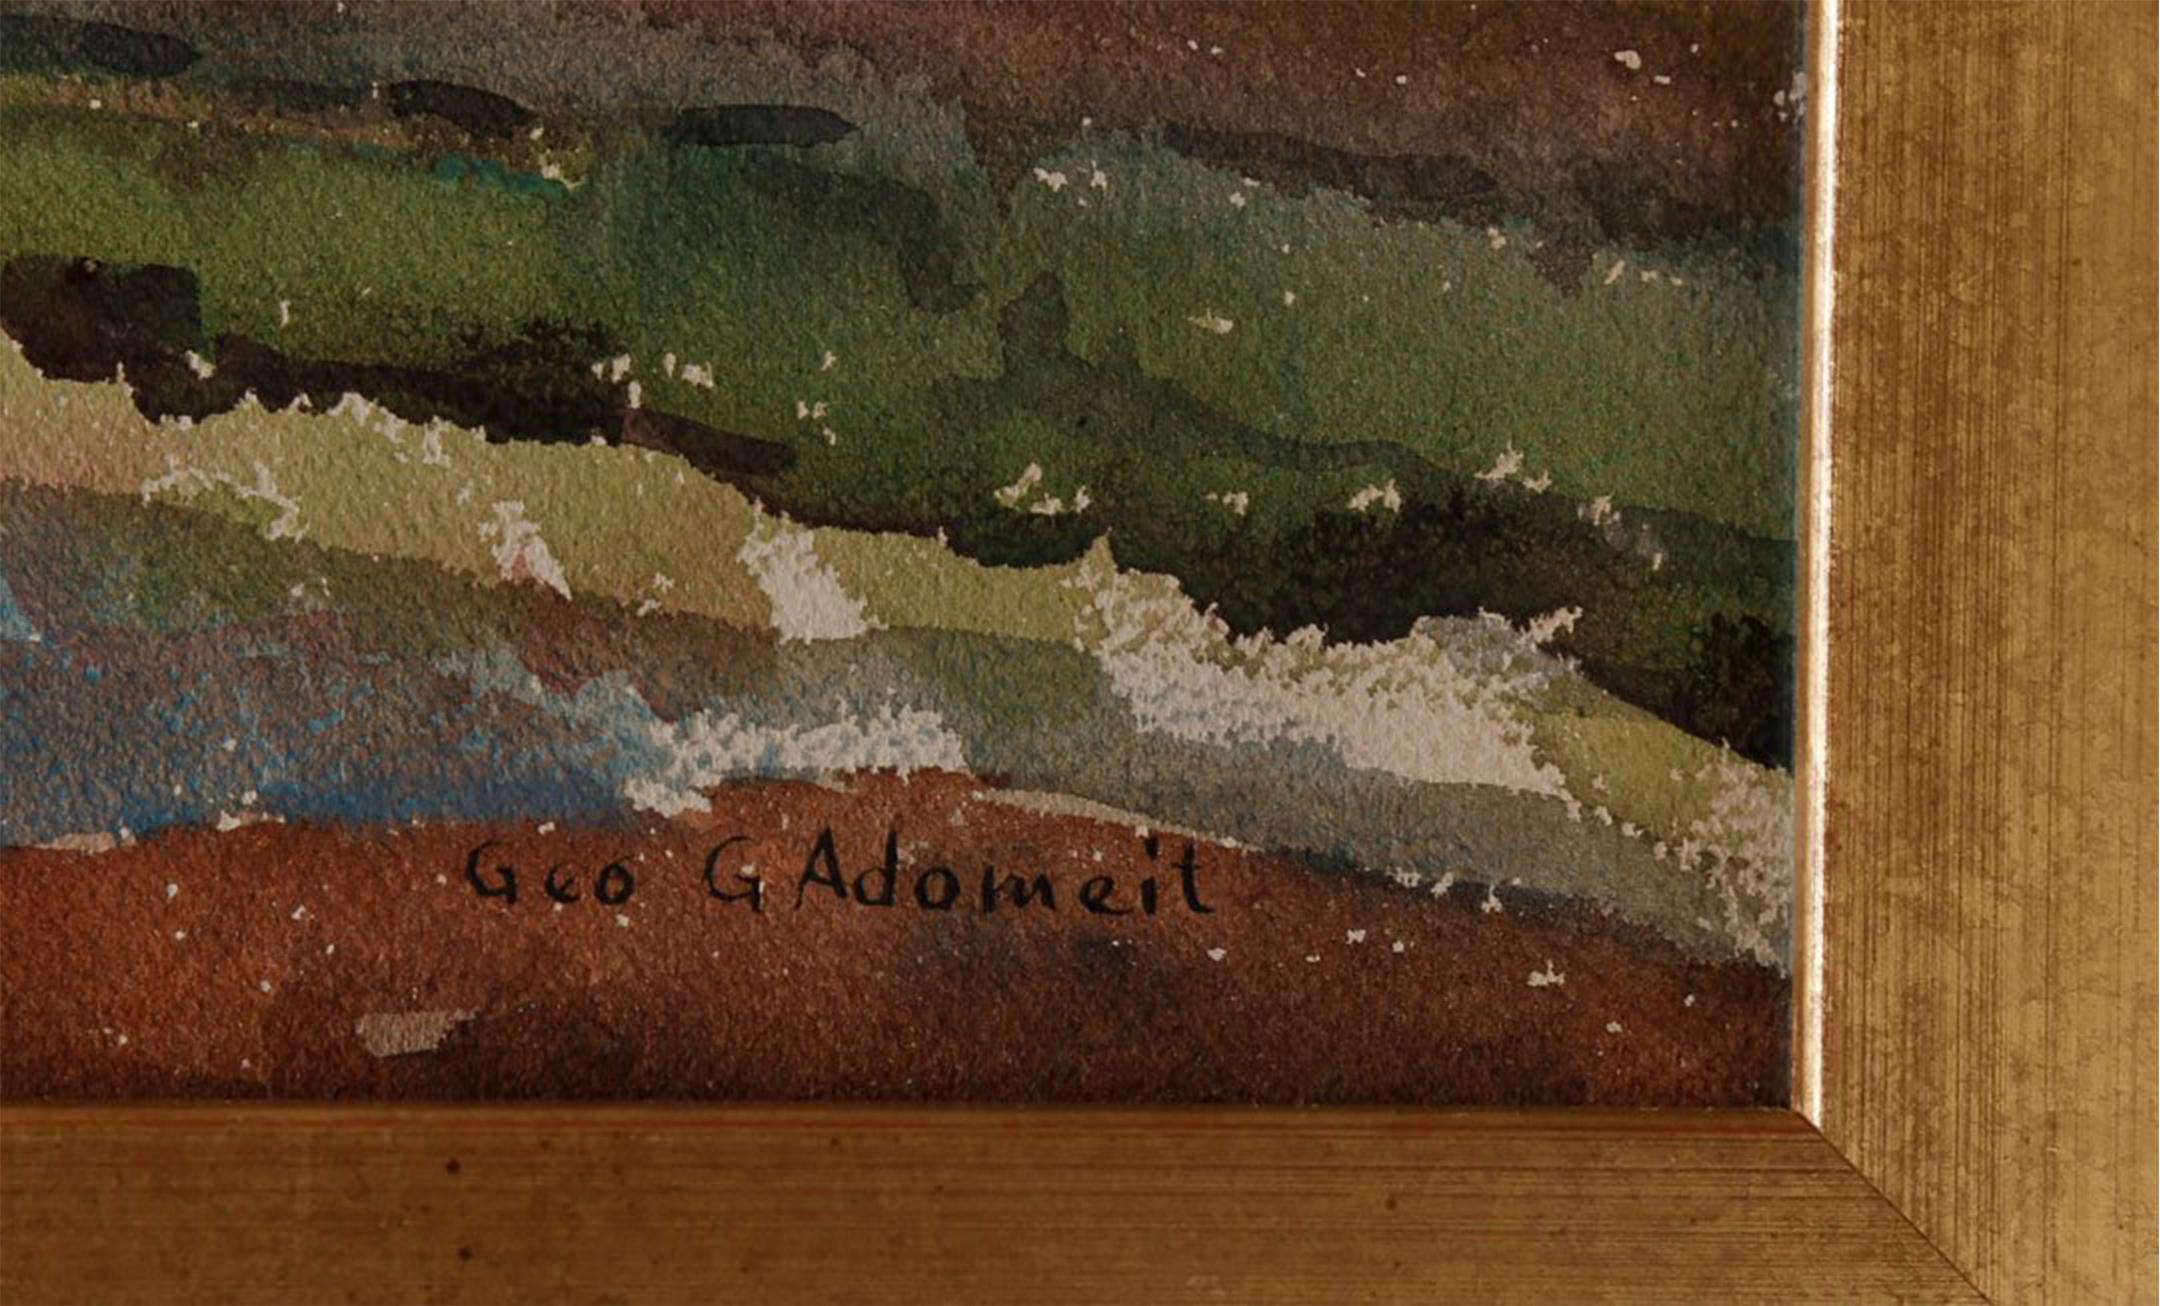 Bauernhaus, farbenfrohes Aquarell einer amerikanischen Szene des 20. Jahrhunderts (Amerikanischer Realismus), Art, von George G. Adomeit